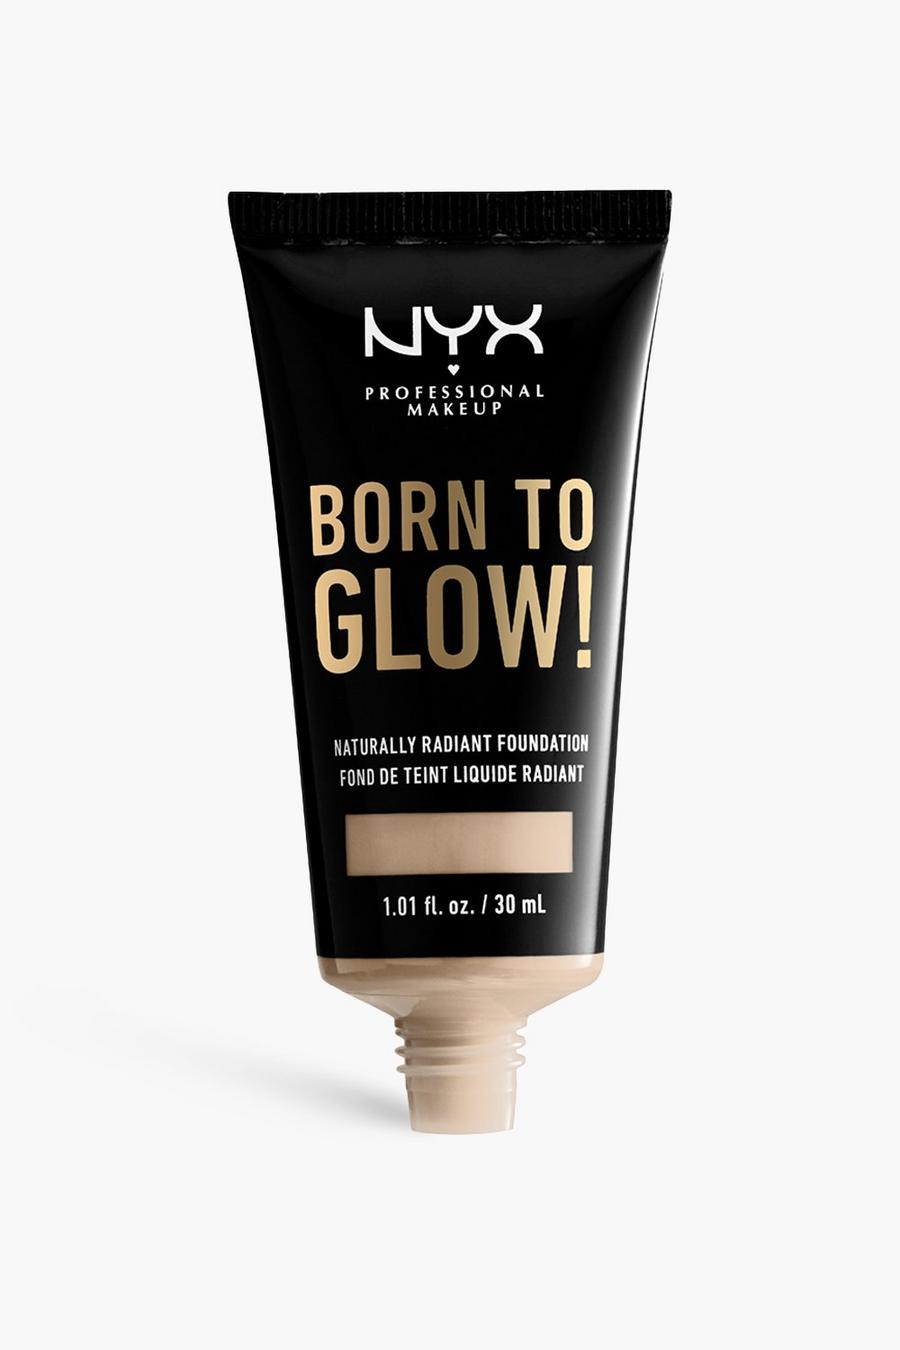 05 light NYX Professional Makeup Suede Matte Lipstick Lightweight Matte Finish